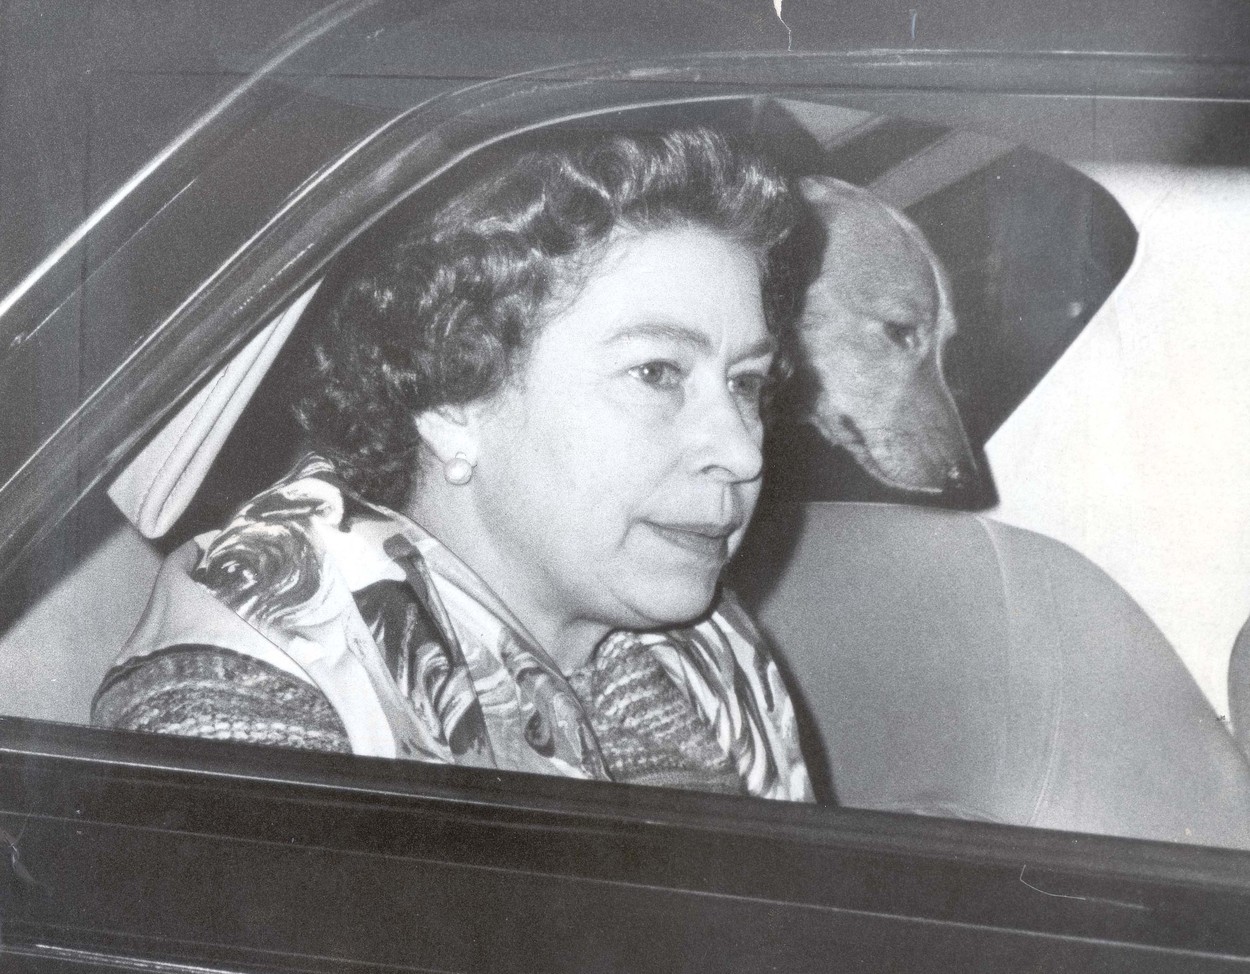 Regina Elisabea, în mașină, cu unul dintre câinii ei